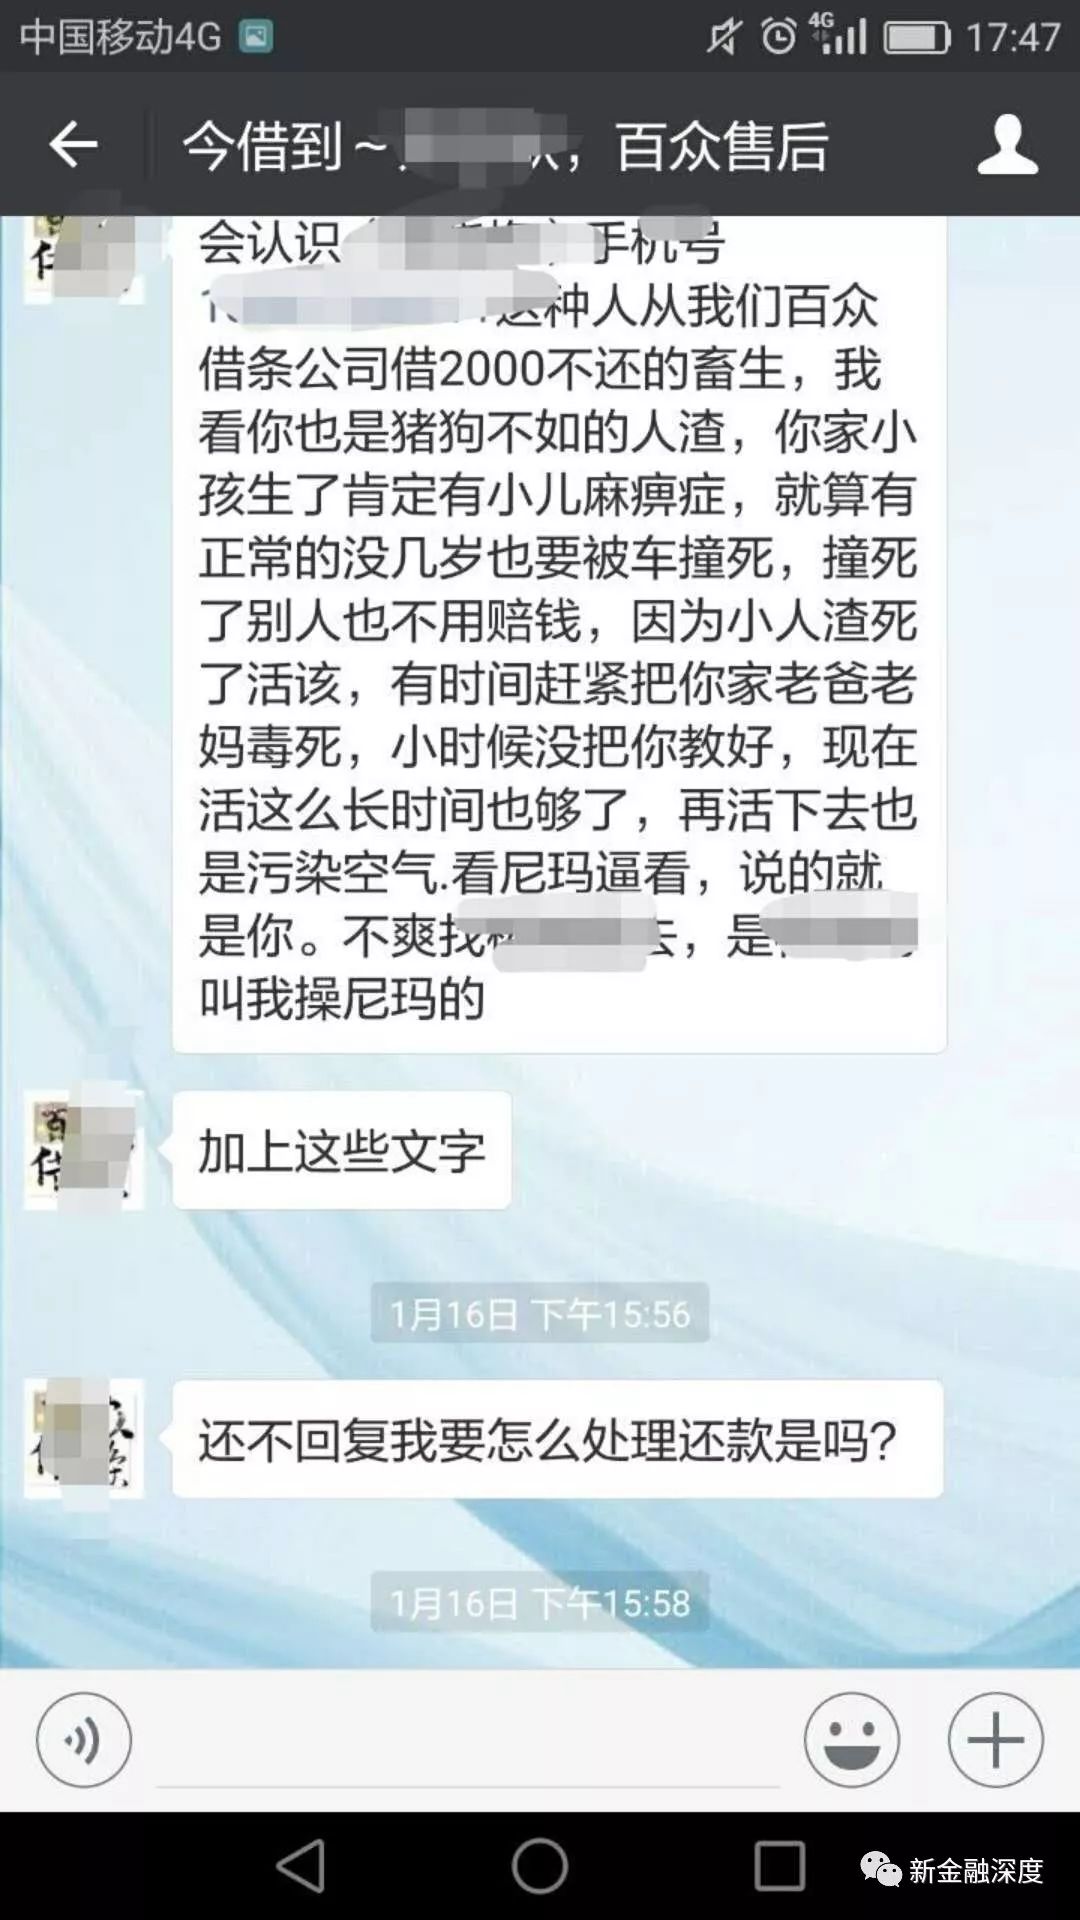 暴力催收:号称首家网络借条管理平台今借到陷入纠纷5